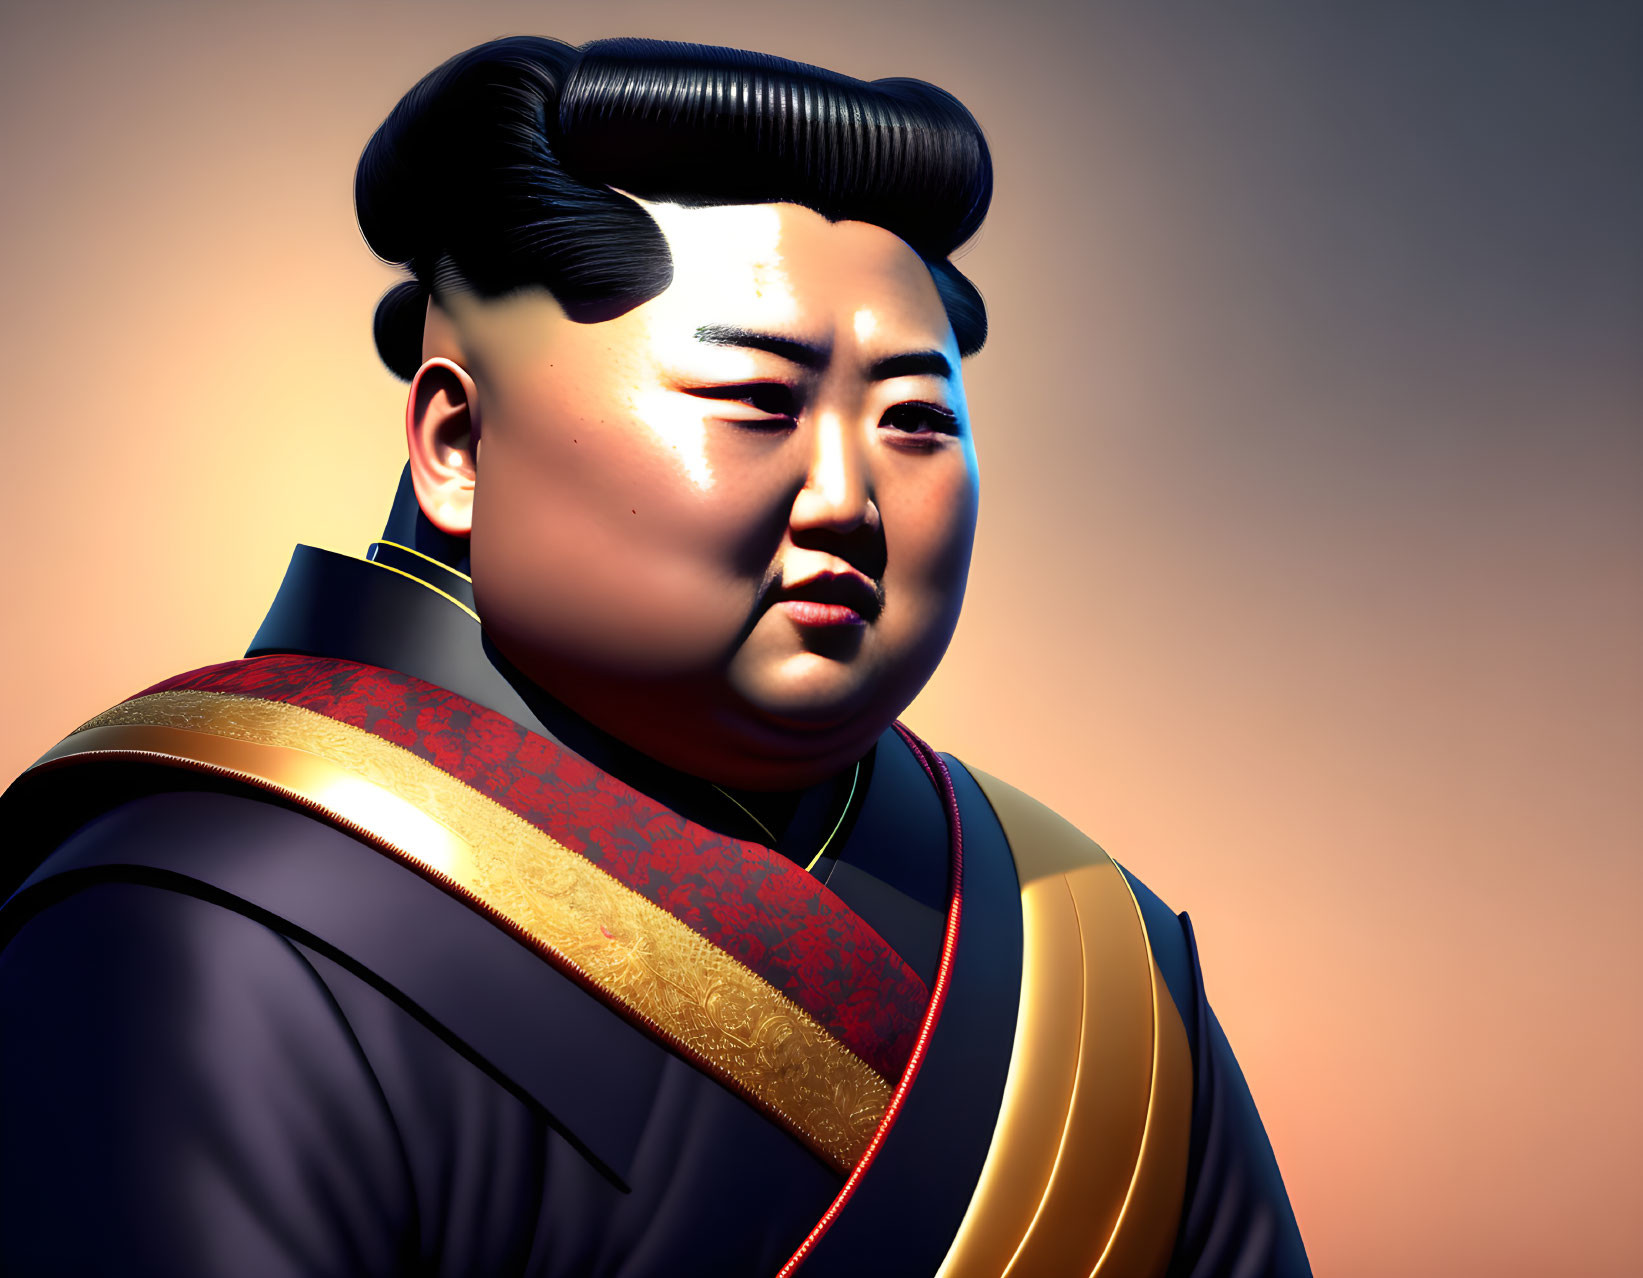 Kim Jong-Un like a Samurai